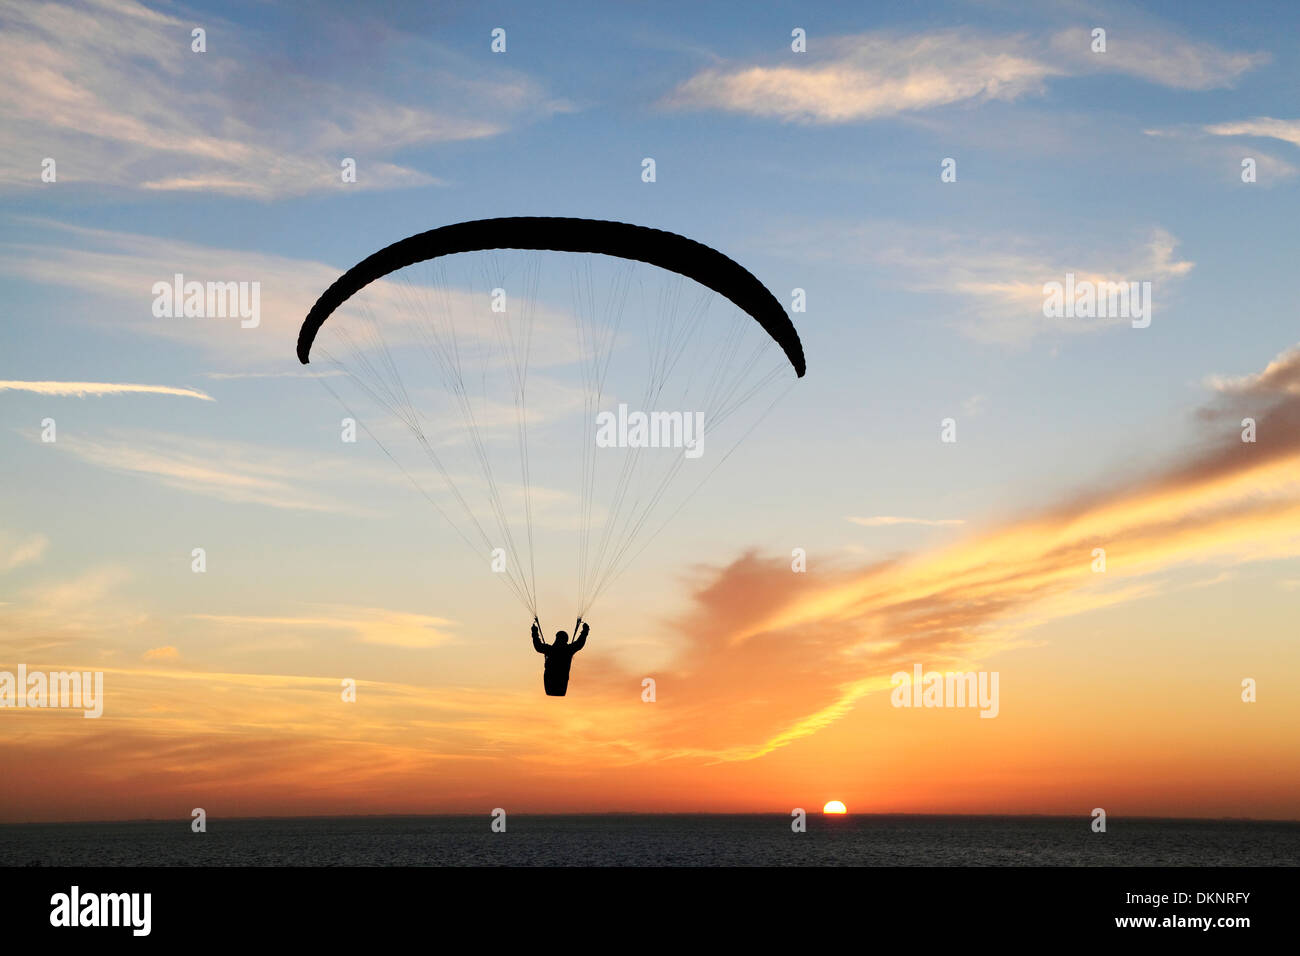 Hängegleiter bei Sonnenuntergang, Sonne Segelflugzeuge Mann Drachenfliegen Fallschirm Silhouette Silhouetten Einstellung Hunstanton Norfolk England UK Stockfoto